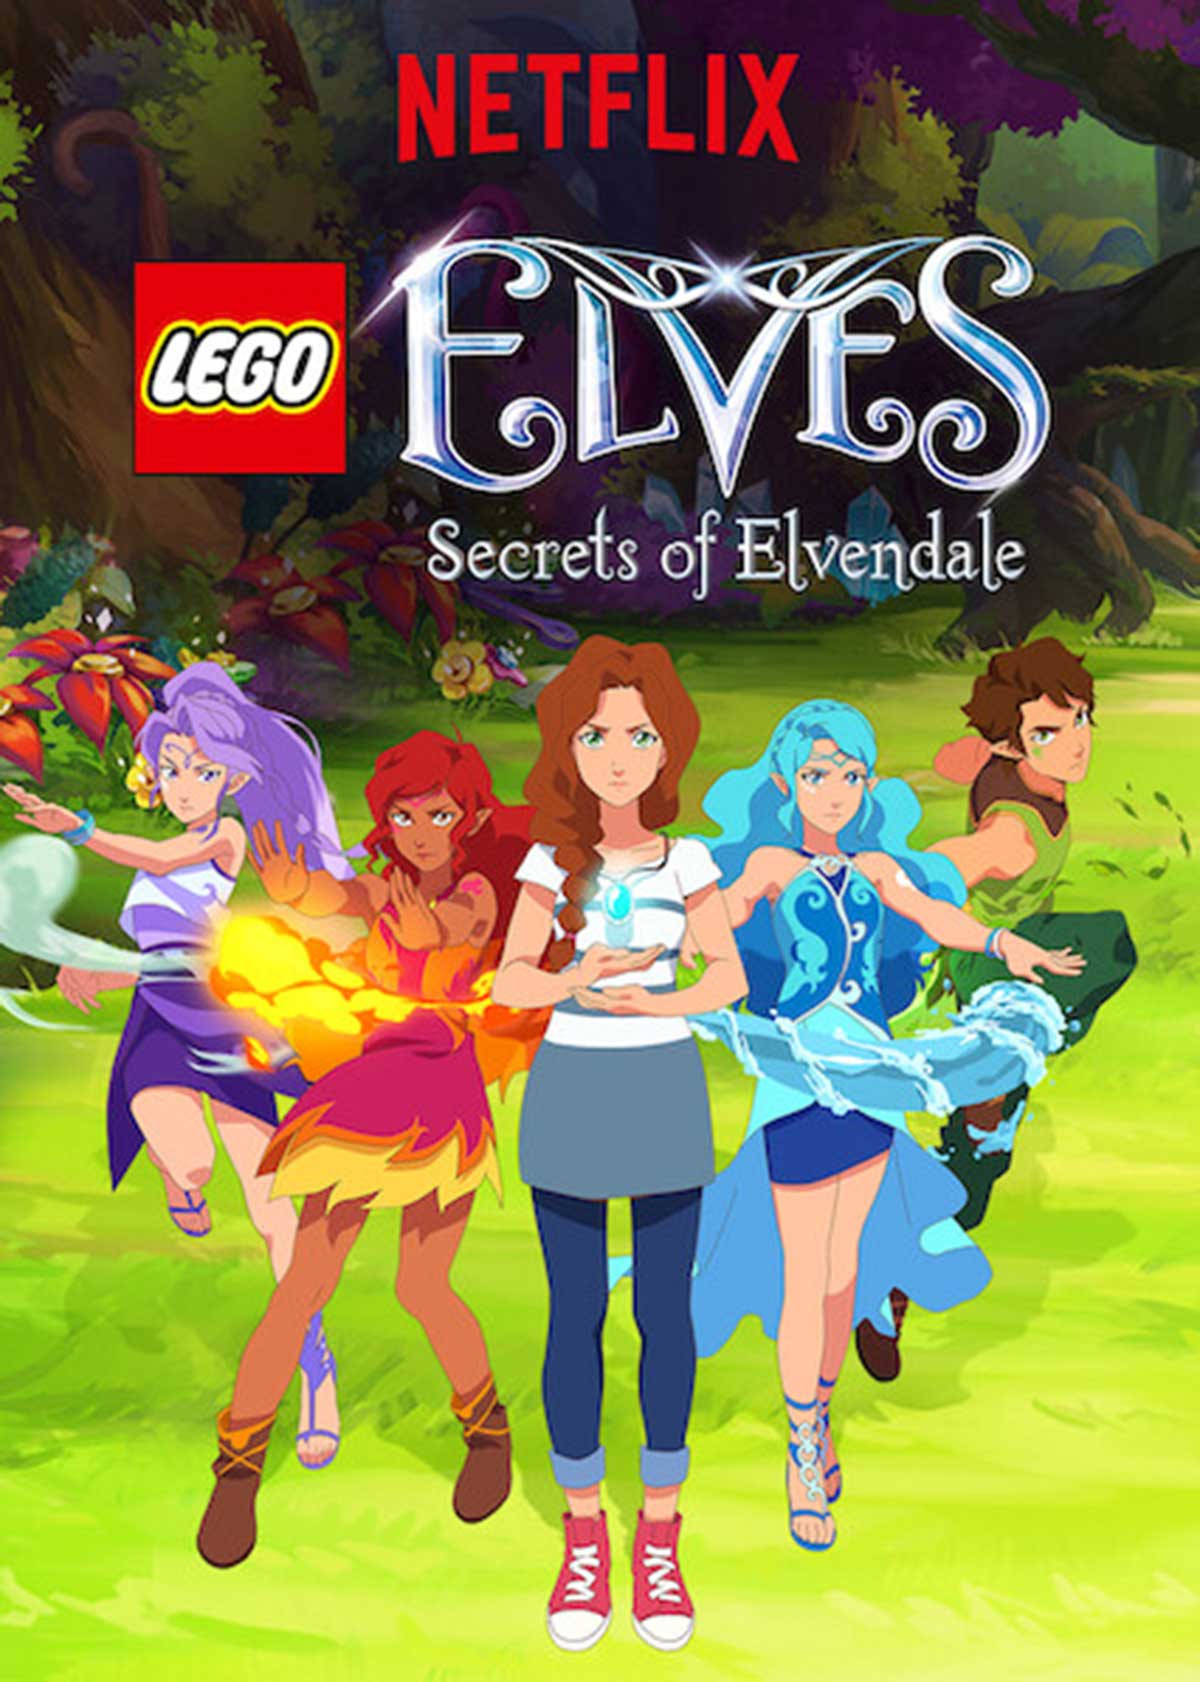 Udfør Retouch krystal LEGO Elves: Secrets of Elvendale | LEGO Elves Wiki | Fandom